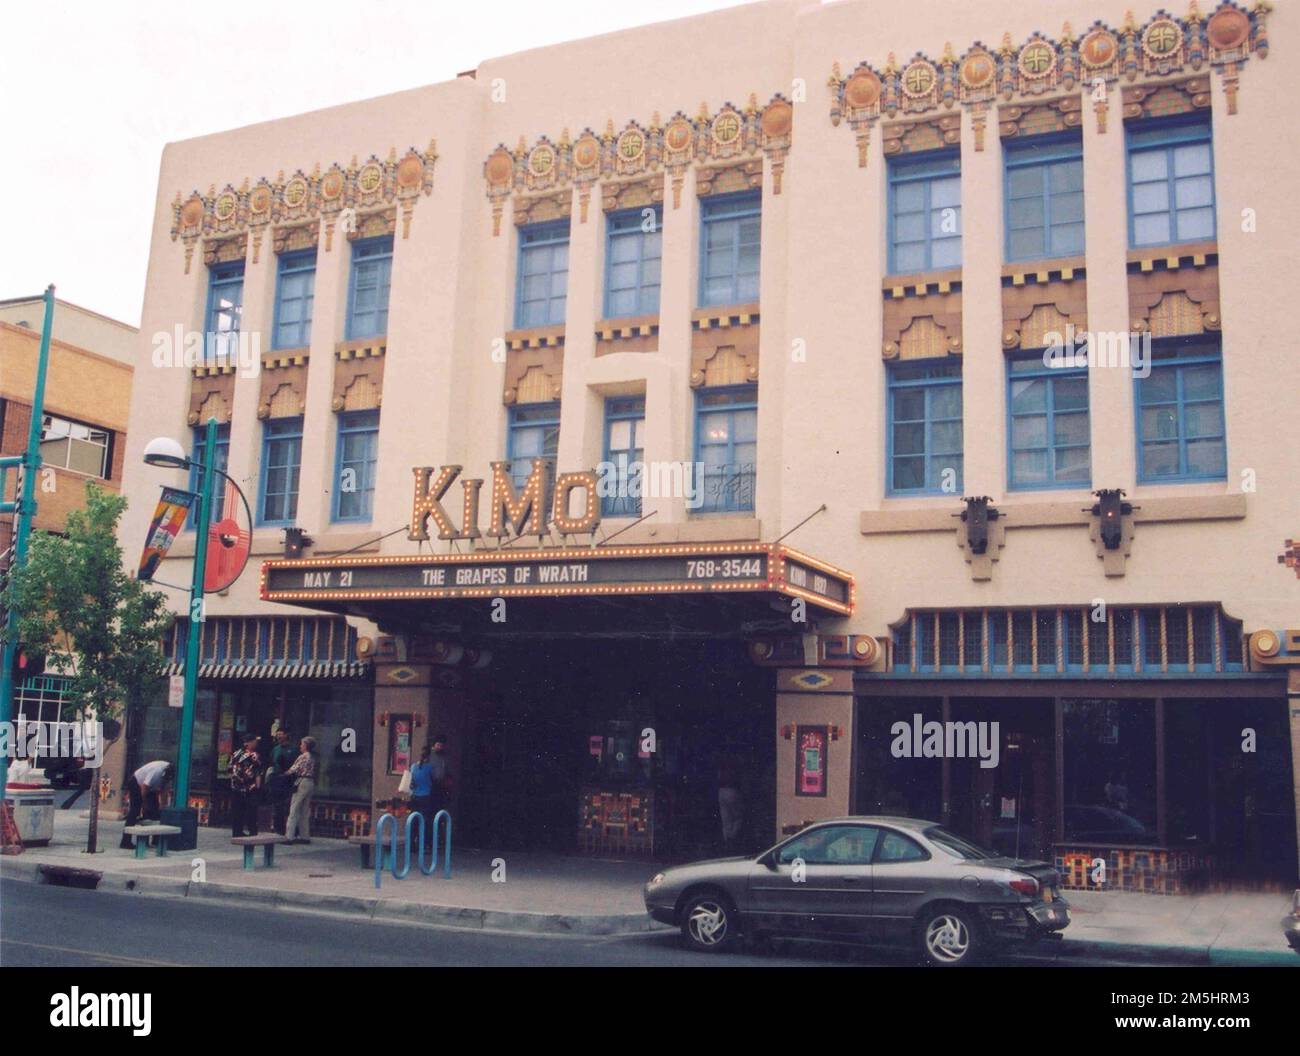 Historic Route 66 - KiMo Theater. The restored, historic Kimo Theater can be seen on Historic Route 66 in Albuquerque, New Mexico. New Mexico (35.085° N 106.652° W) Stock Photo